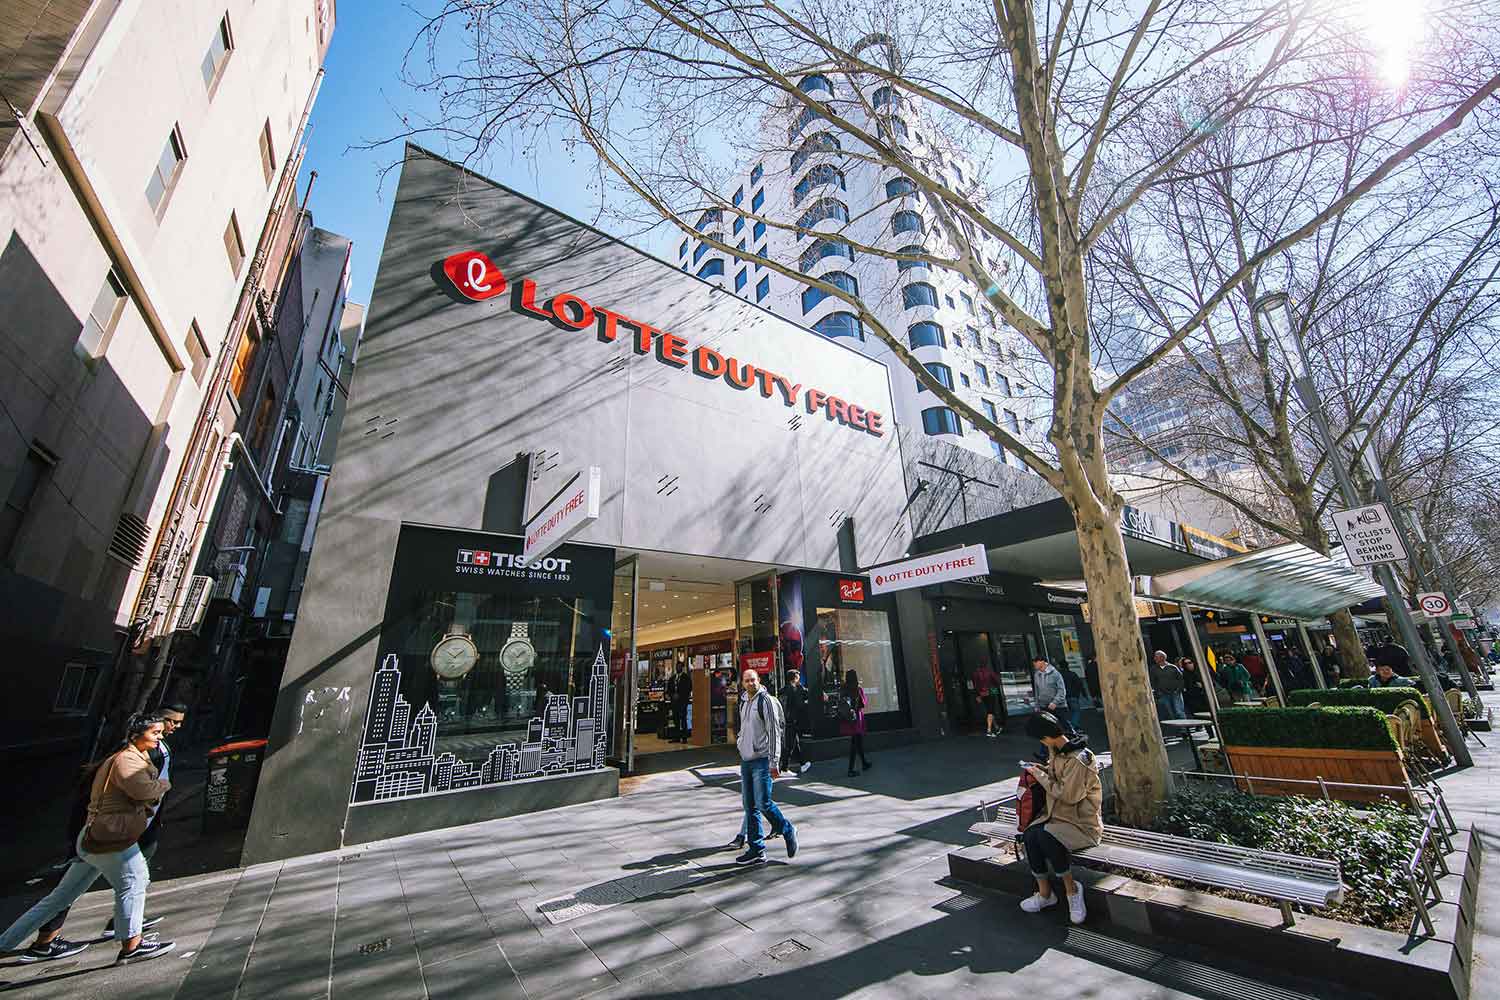 Melbourne 185 Swanston Street Store Lotte Duty Free